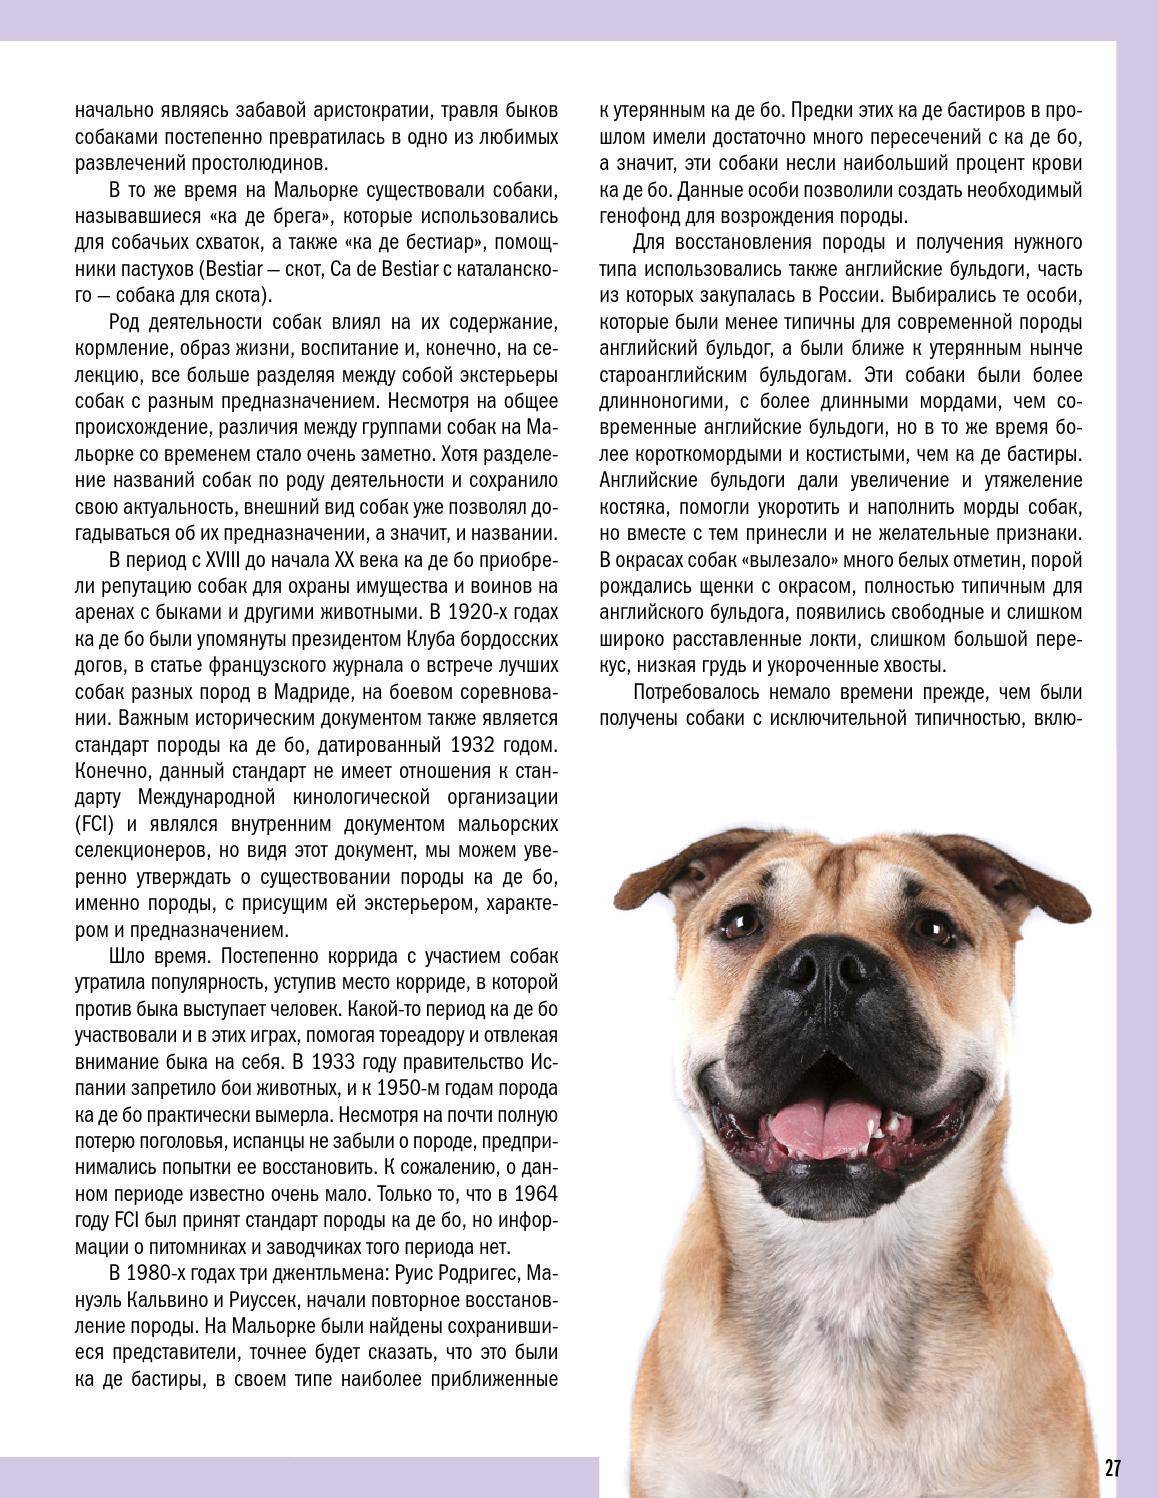 Ка-де-бо: фото, характеристика и описание породы собак